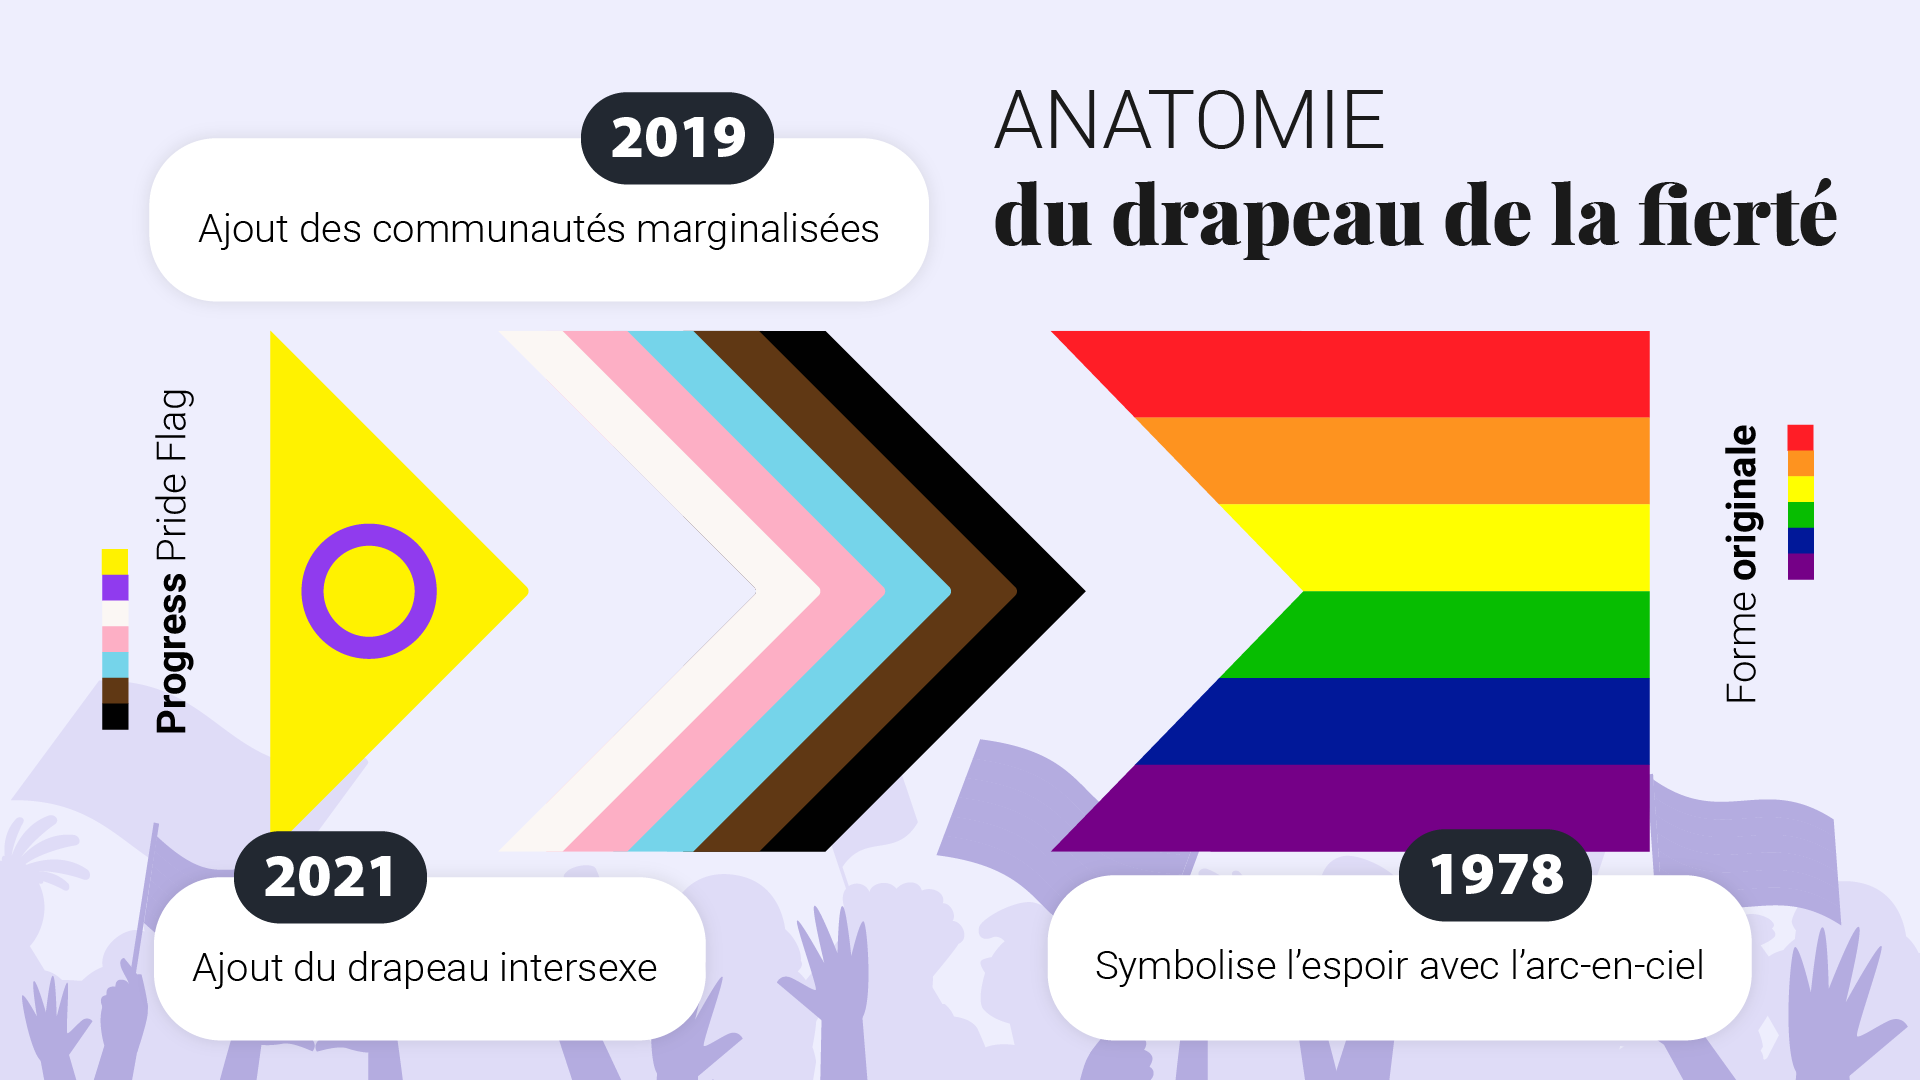 Infographique détaillant l'anatomie du drapeau de la fierté, incluant les ajouts de 2019 et 2021.